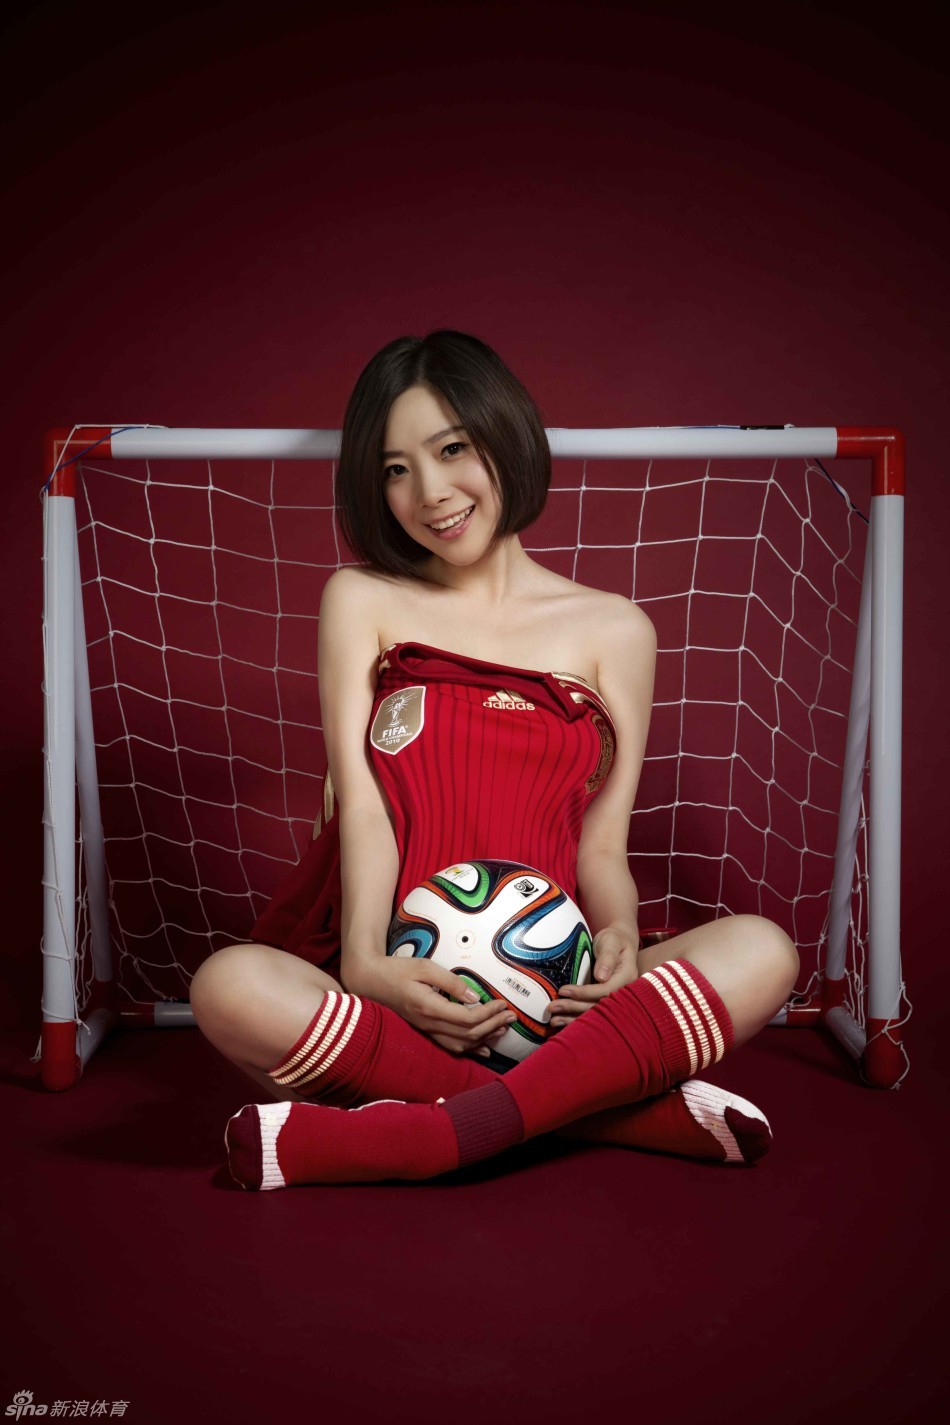 مشجعات كرة القدم فى الصين يلتقطن صورا مثيرة لكأس العالم